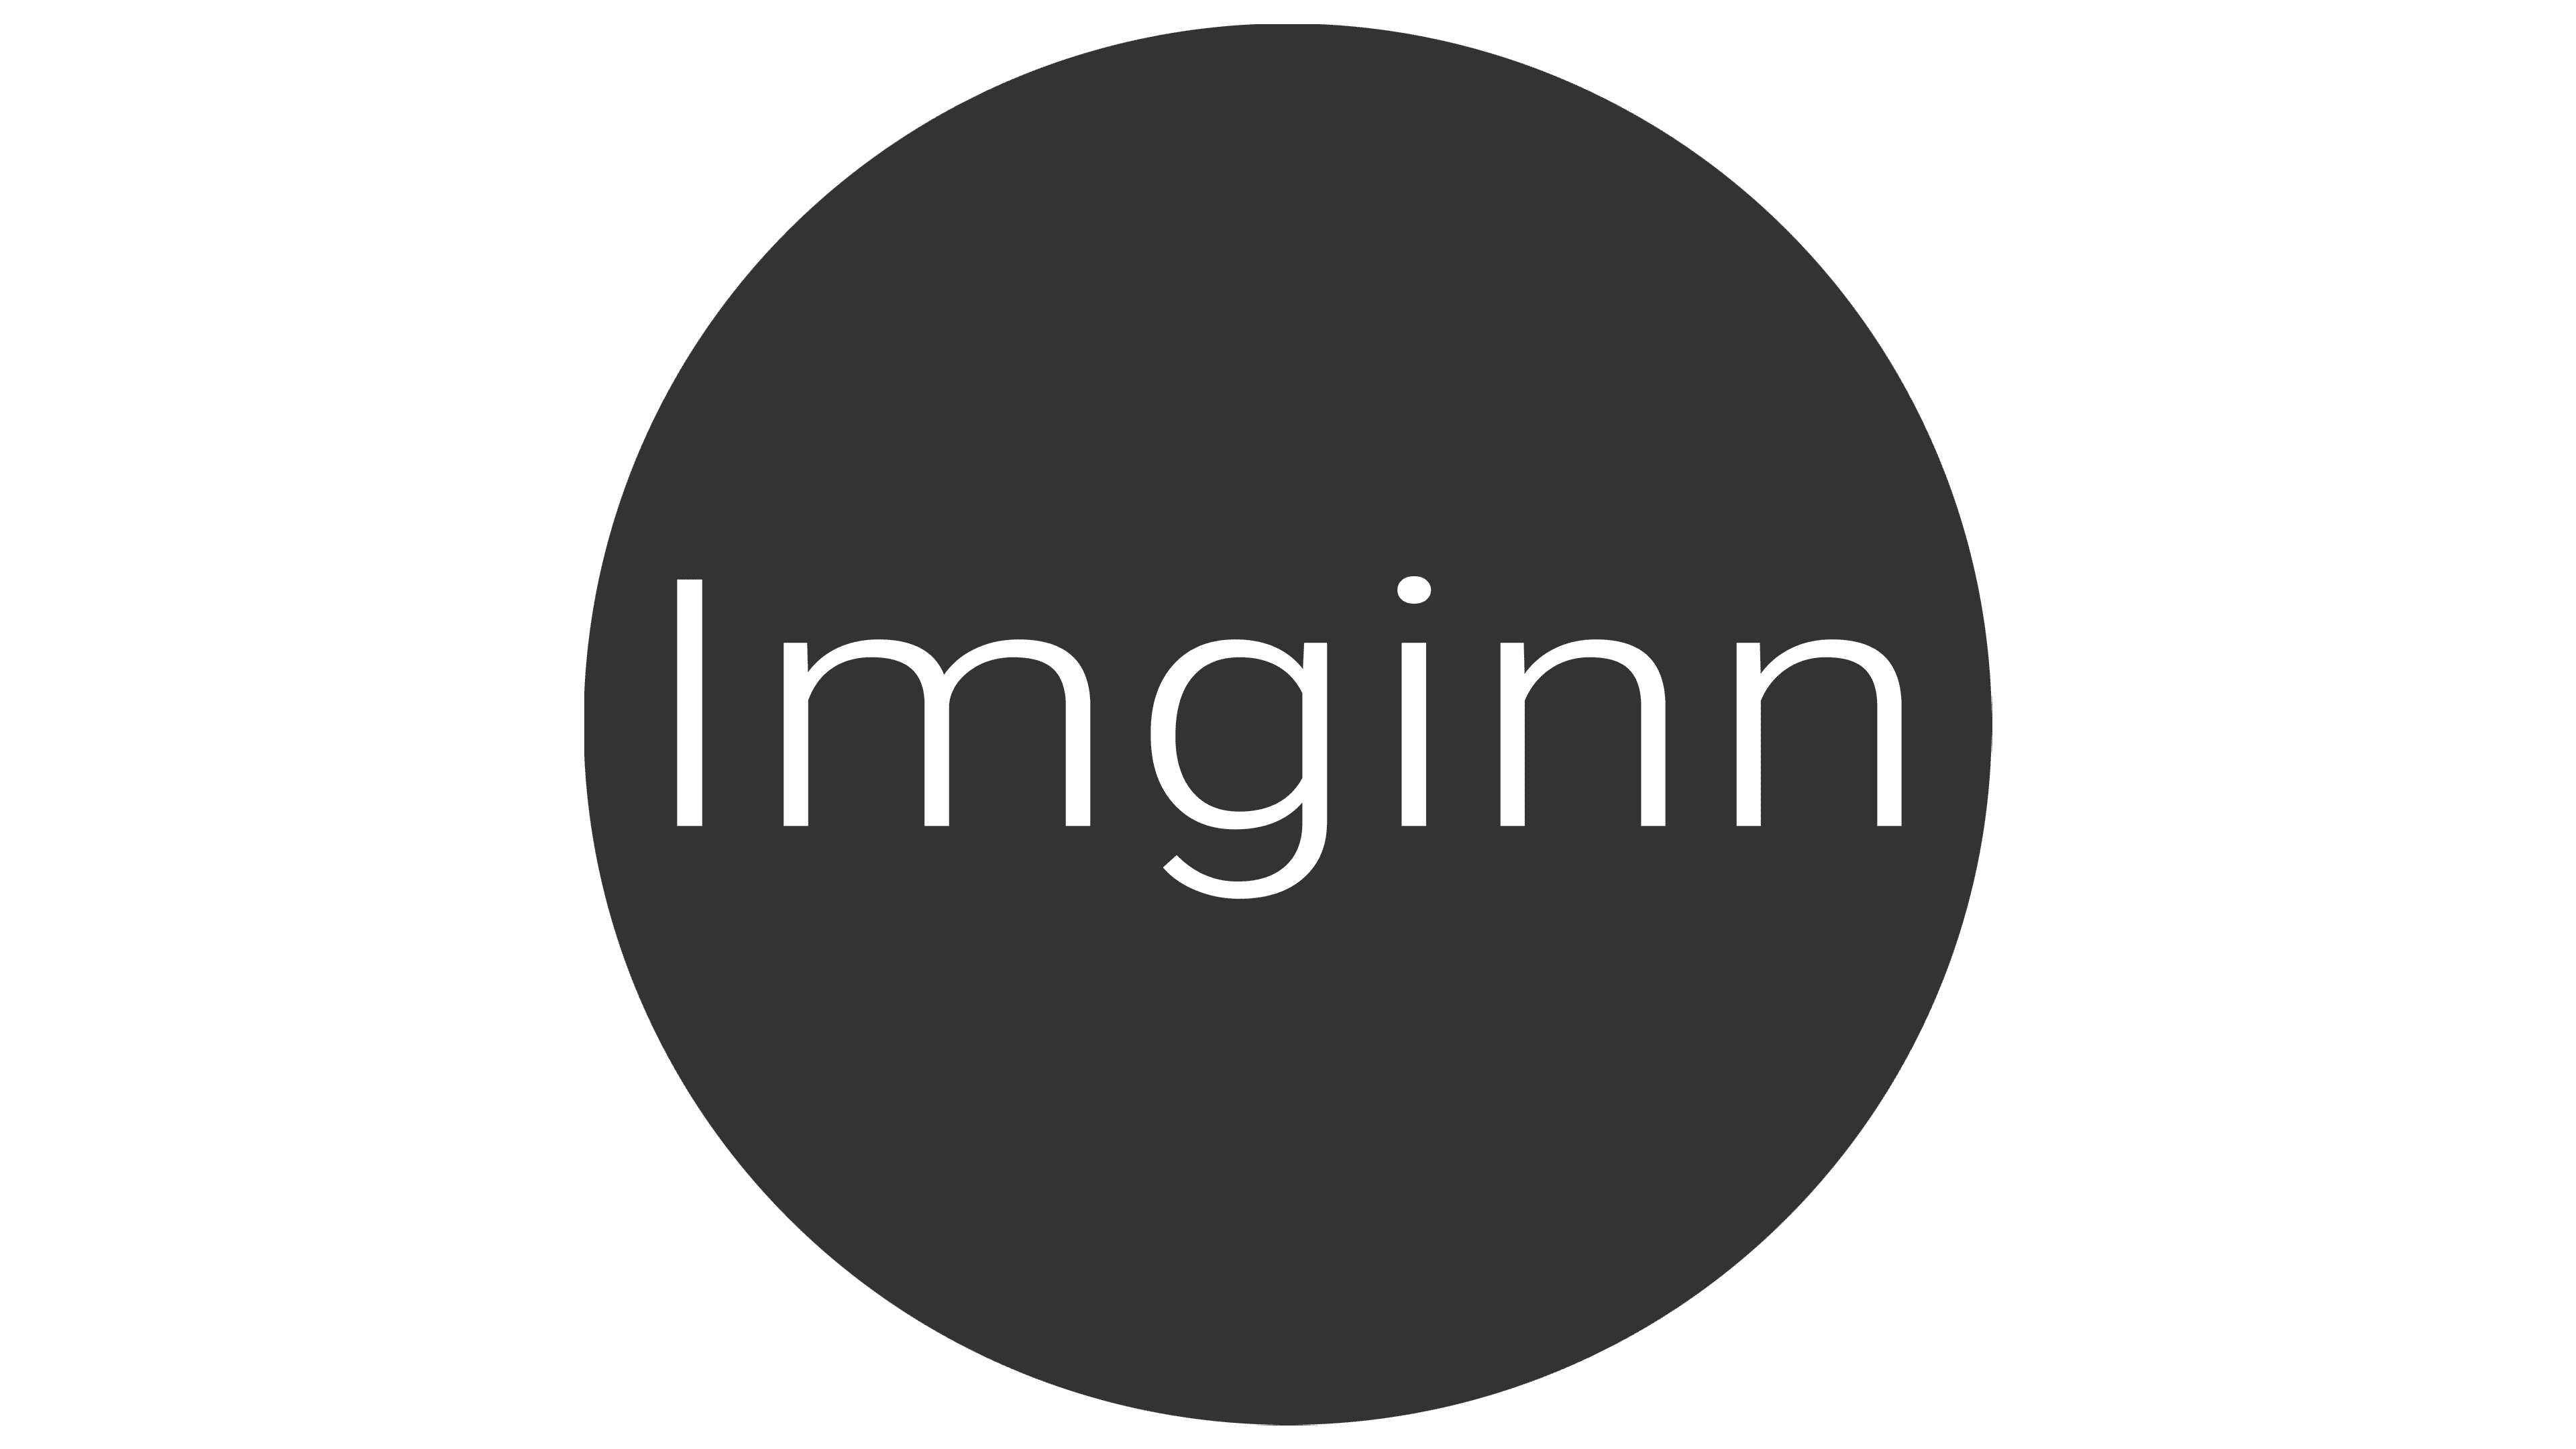 Imginn: Instagram Story Viewer, Downloader & 9 Alternative Sites